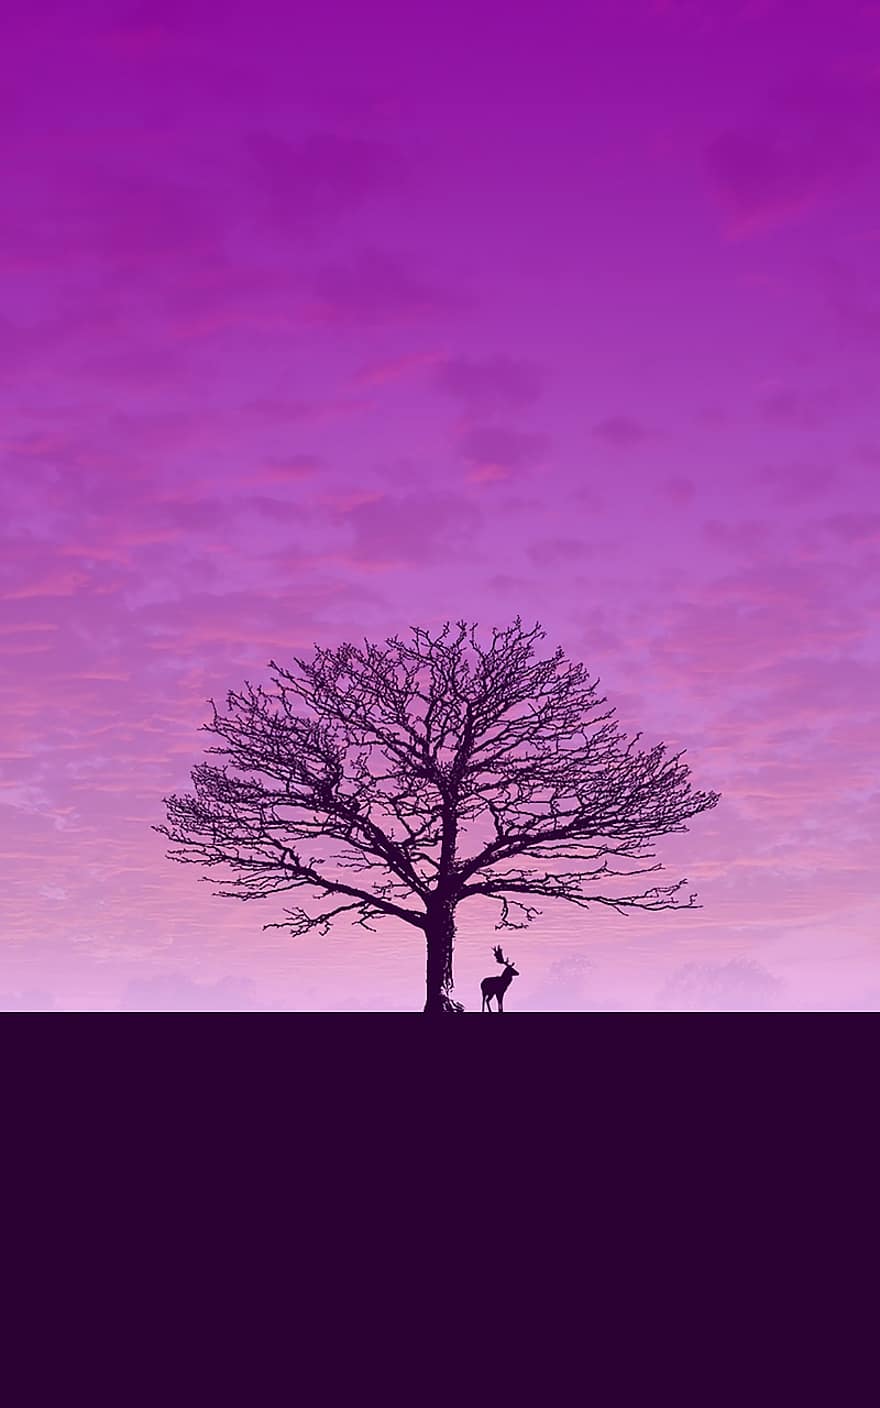 скачать, обои на стену, пурпурный, олень, небо, силуэт, дерево, фиолетовое небо, розовое небо, розовое дерево